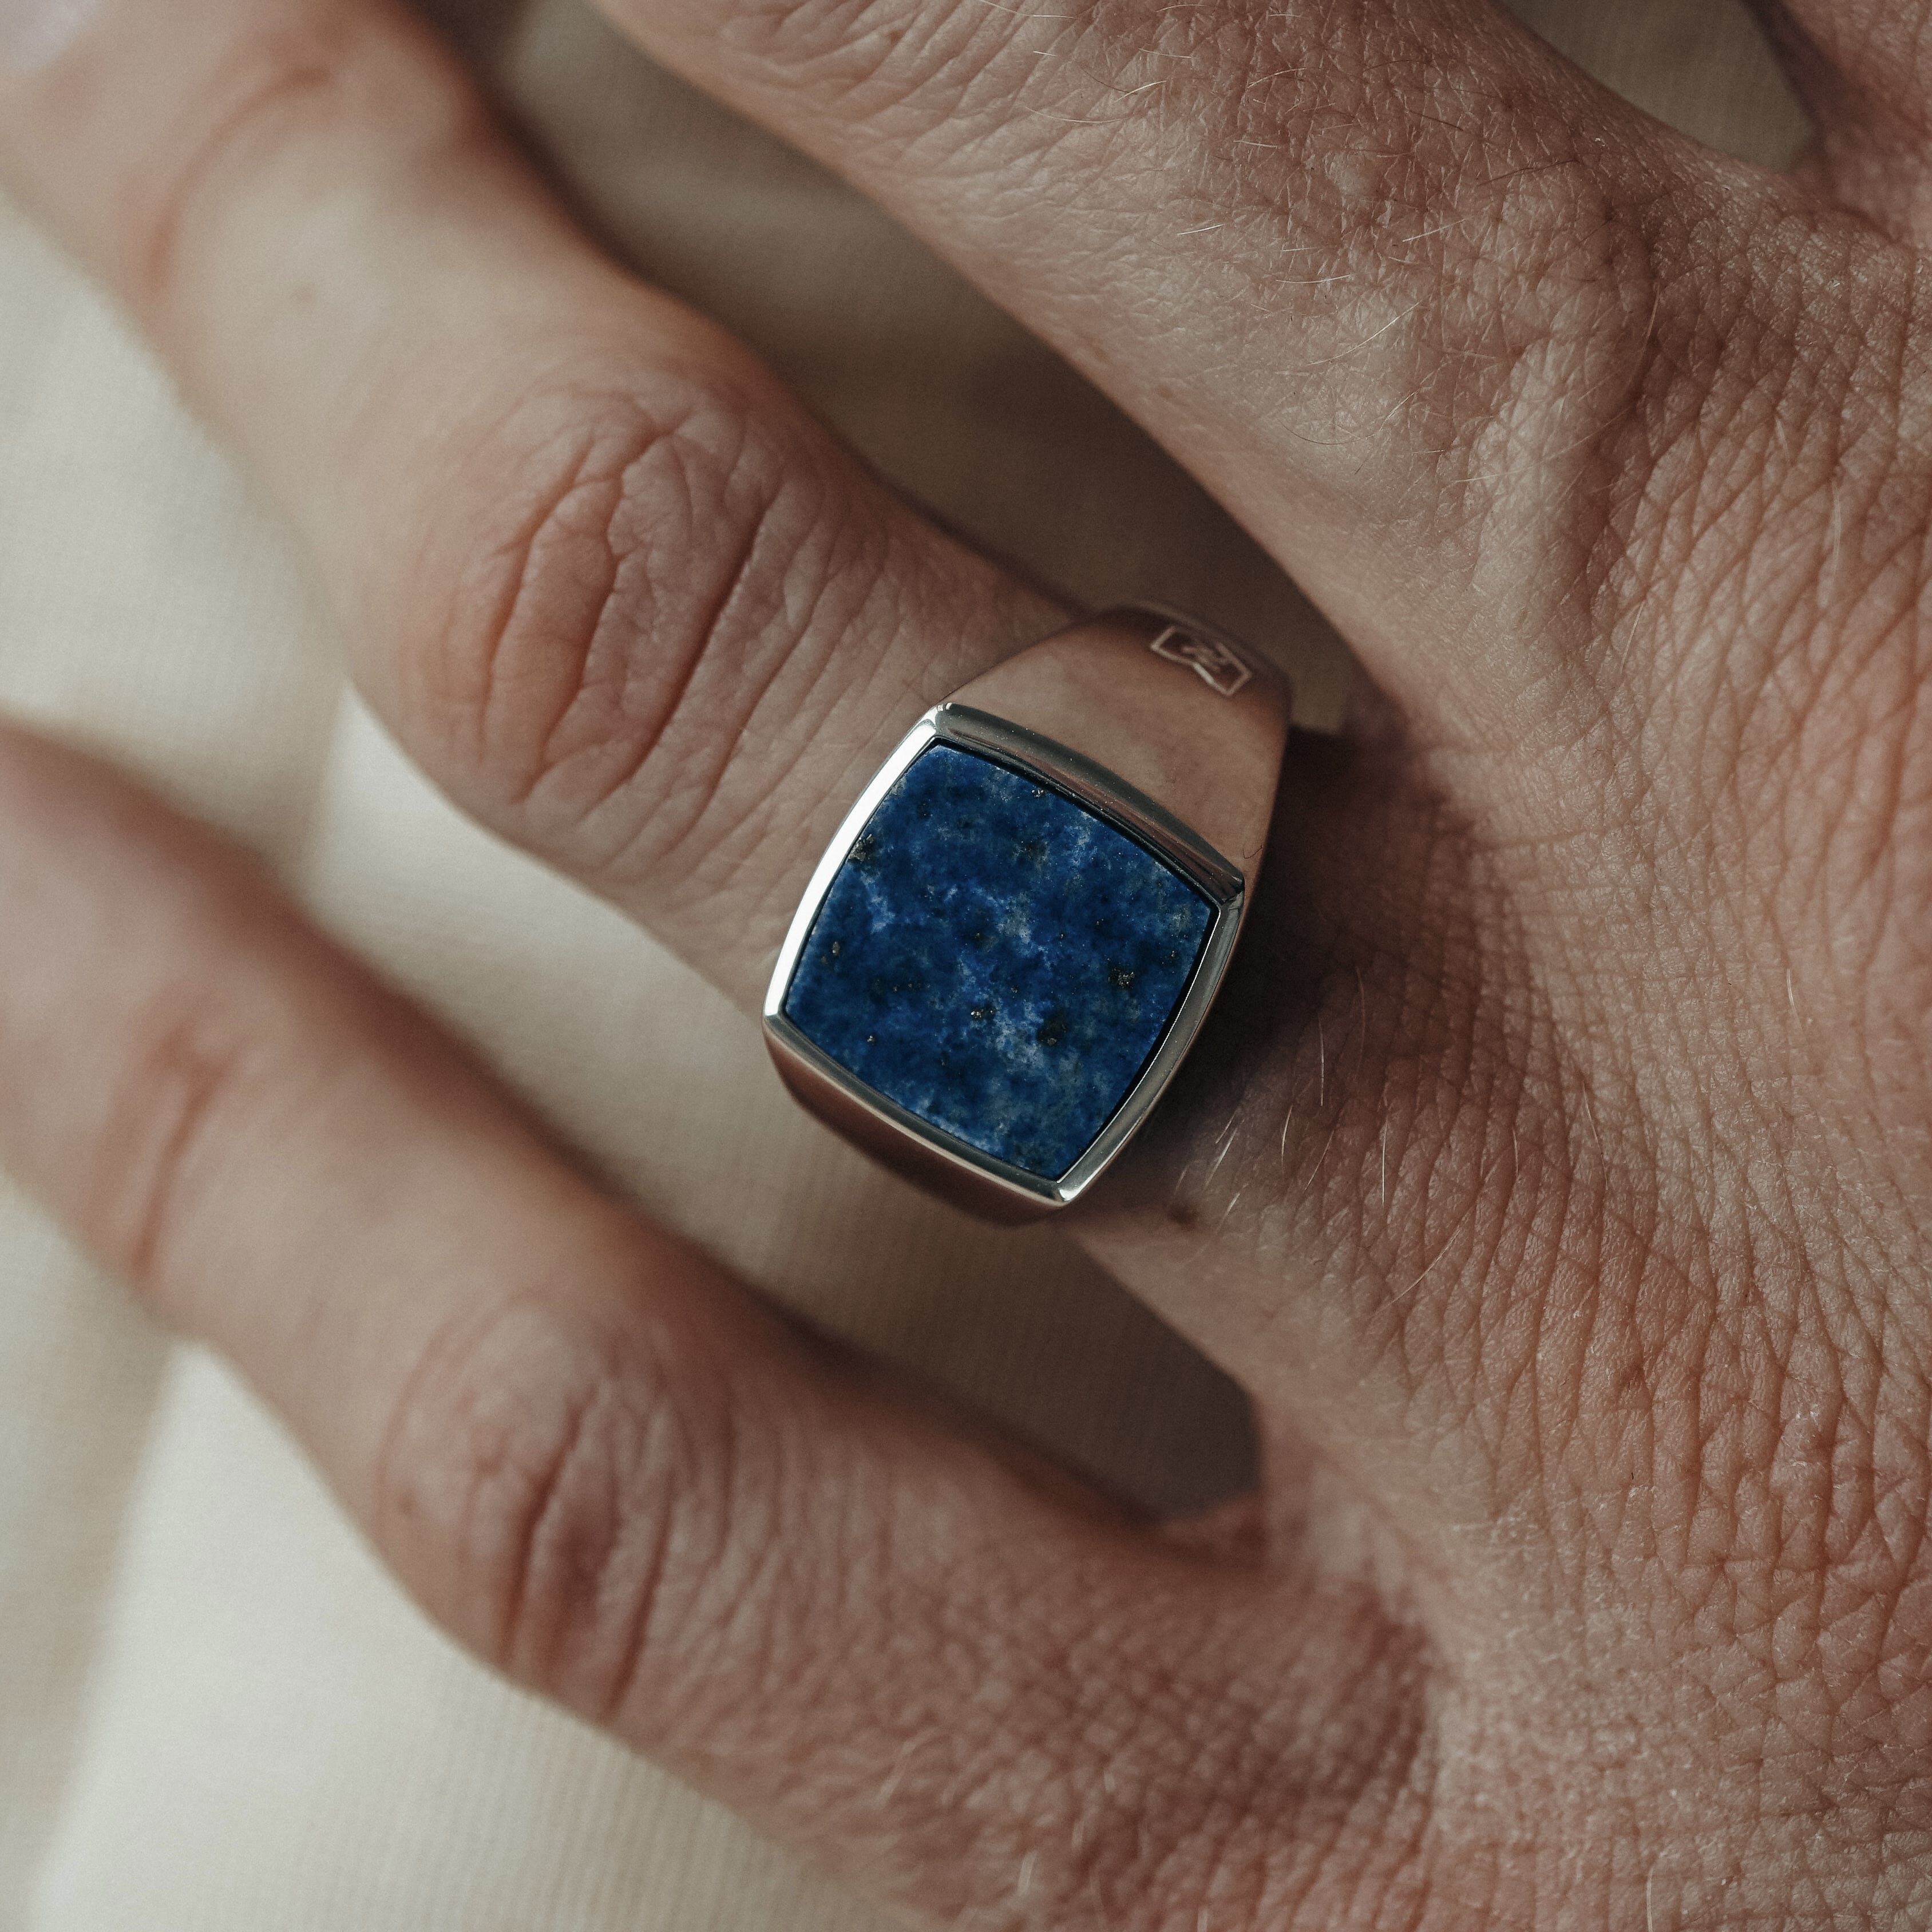 Herren Schmuck Sprezzi Fashion Siegelring Herren Ring Silber aus 925 Sterling Silber Siegelring massiv poliert mit blauem Lapis 